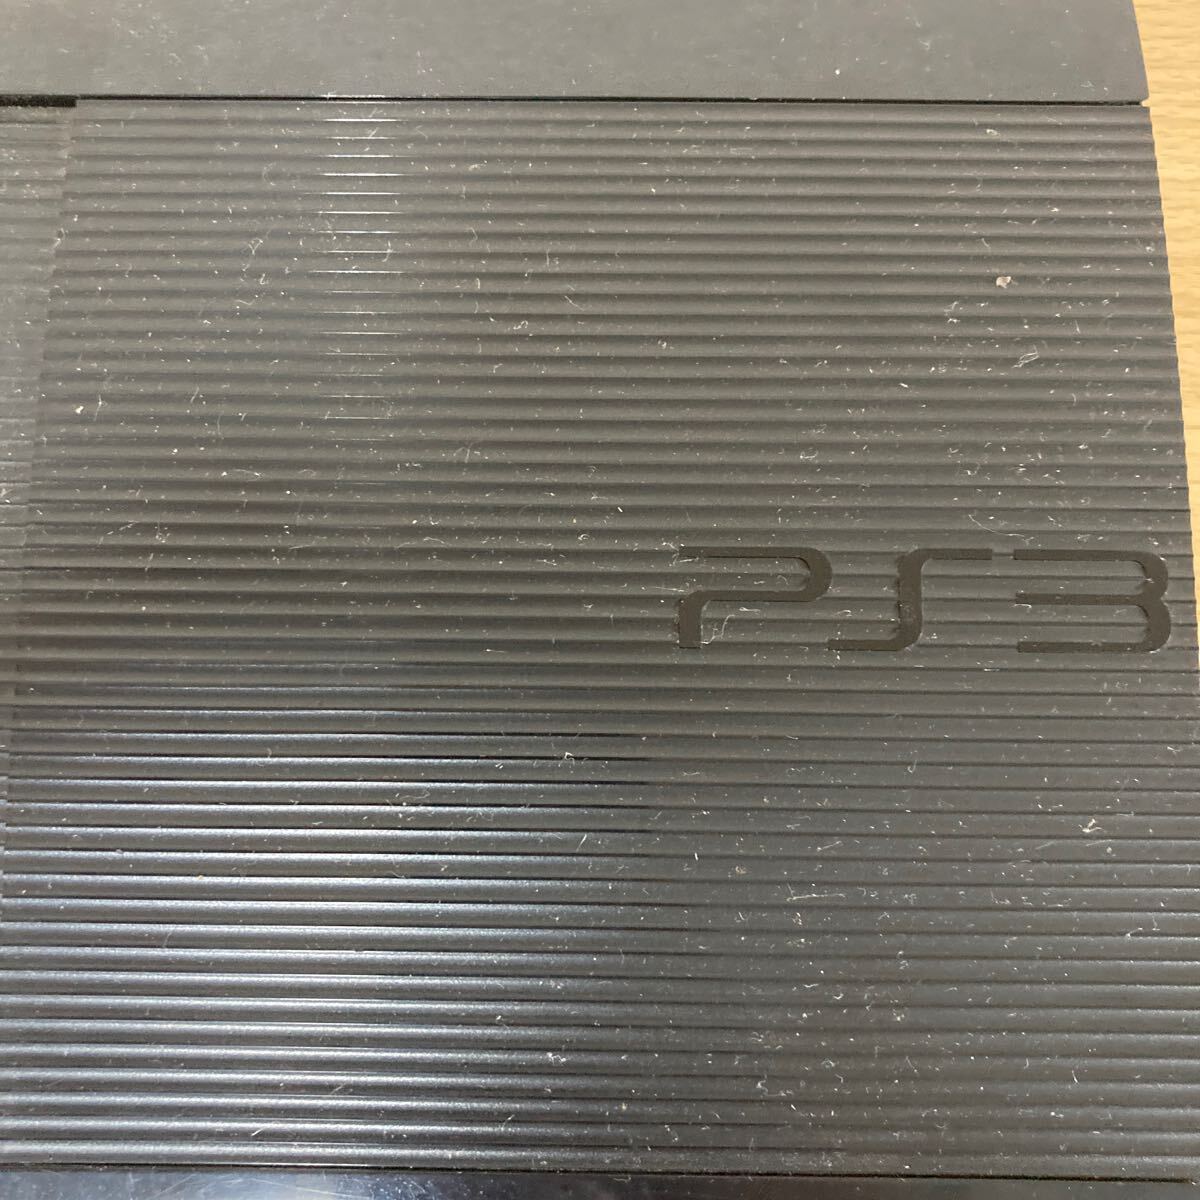 SONY ソニー PlayStation 3 PS 3 MODEL CECH-4200B プレステゲームソフト ソフト シューティング シュミレーション まとめ16本 4 シ 5637の画像4